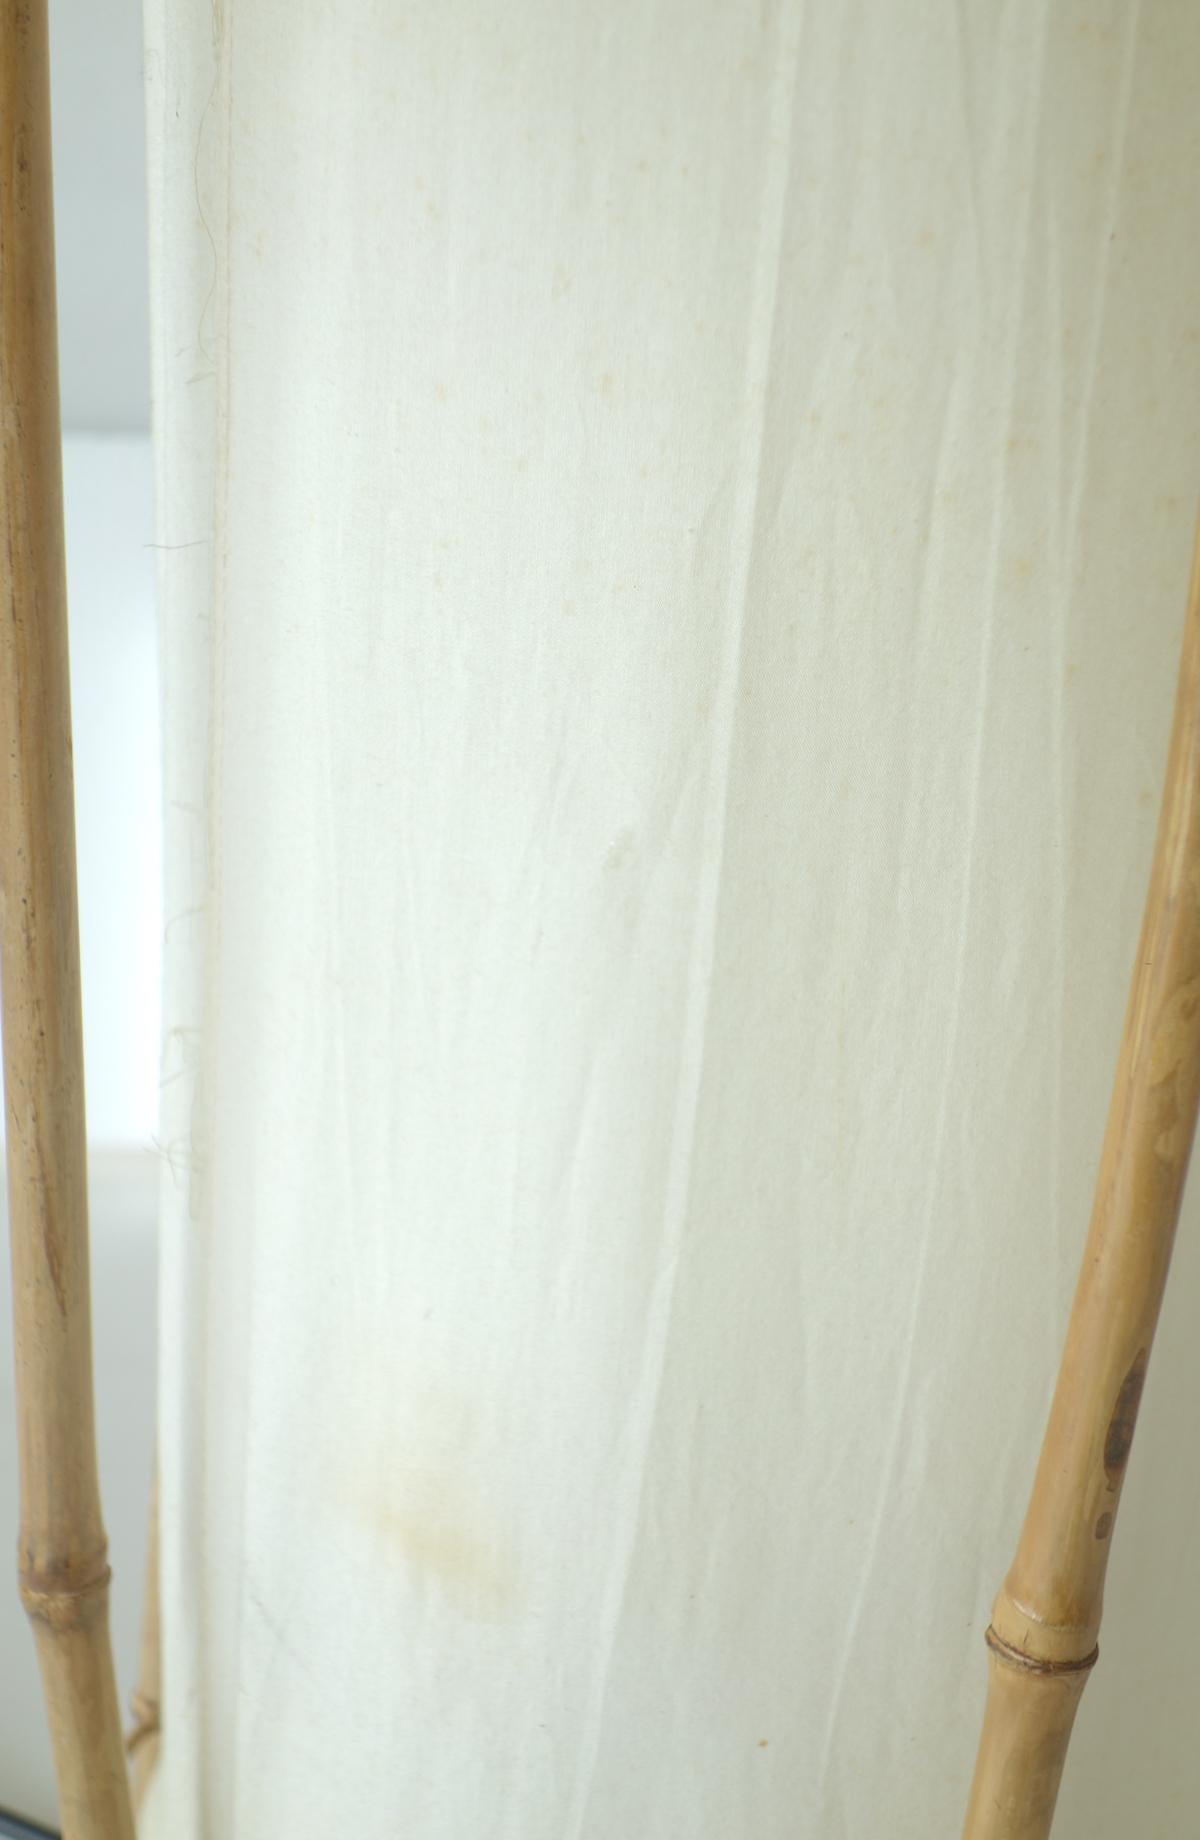 Lampadaire en bambou Louis Sognot
France, 1960

Six bâtons de bambou 
Abat-jour cylindrique en toile de coton

Très bon état d'origine avec de légères imperfections et traces d'utilisation sur le coton.